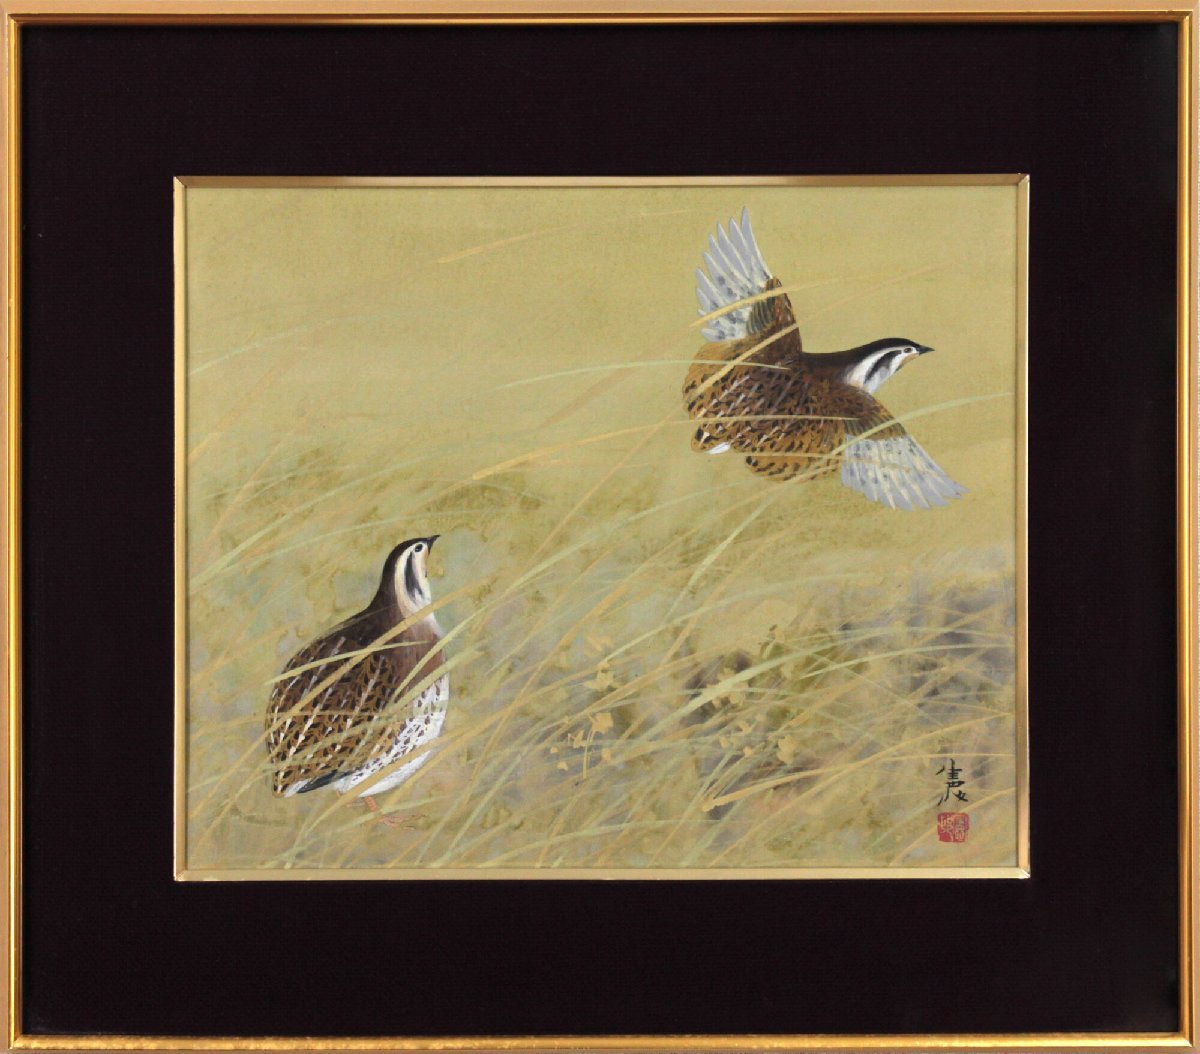 Norikuni Kawamura Quail Japanese painting [Authentic guaranteed] Painting - Hokkaido Gallery, Painting, Japanese painting, Flowers and Birds, Wildlife